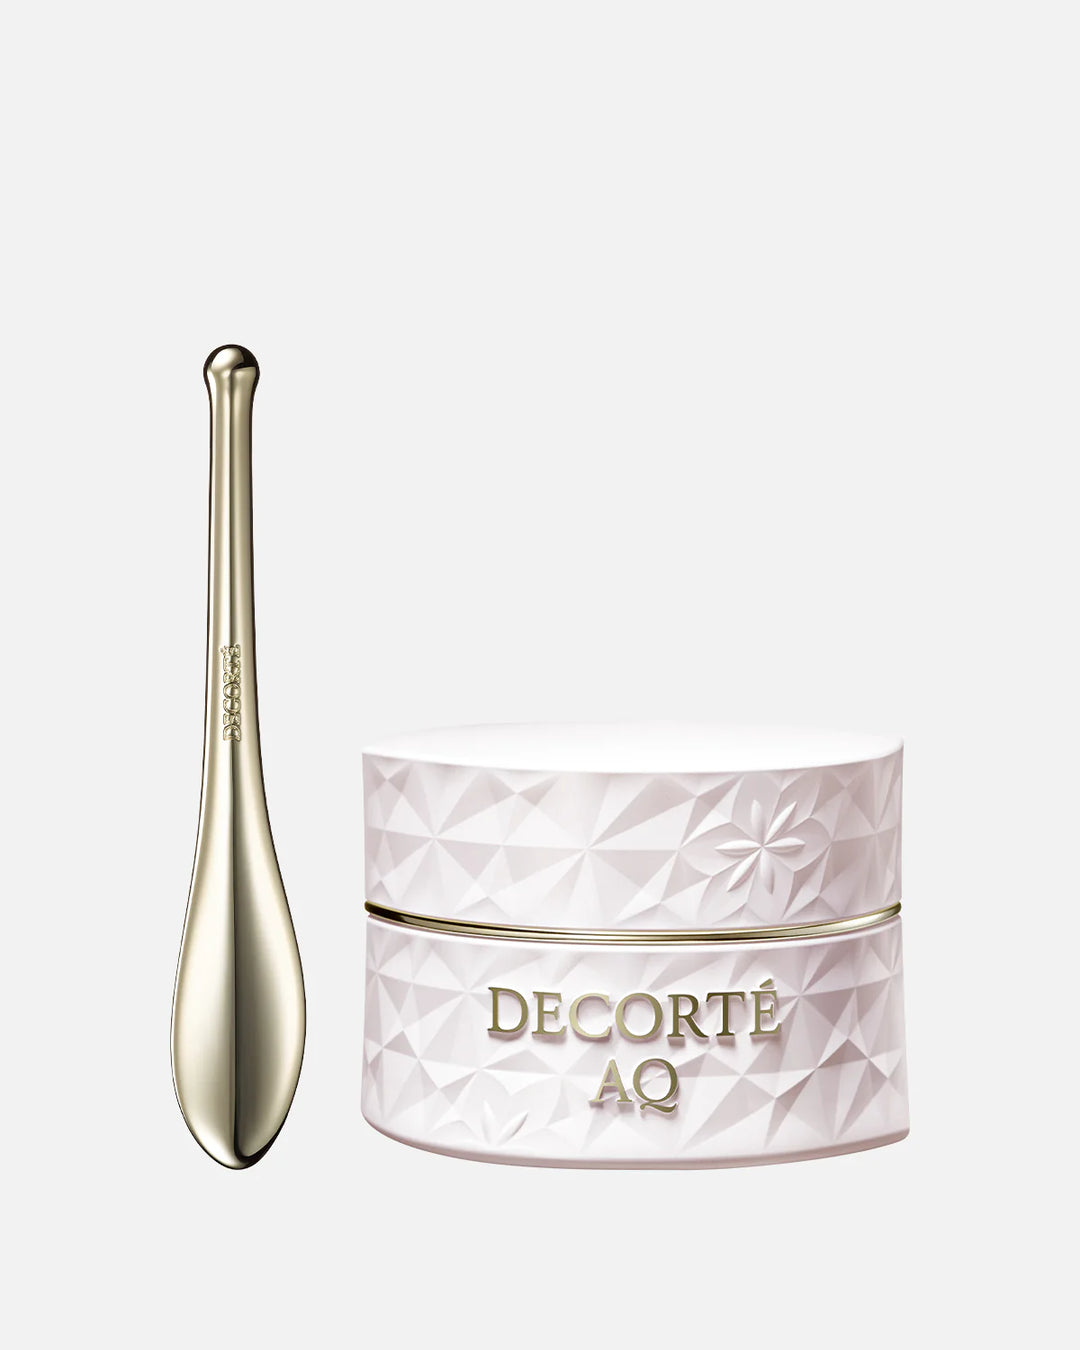 DECORTE  AQ Concentrate Neck Cream 3.4 oz. / 100 mL